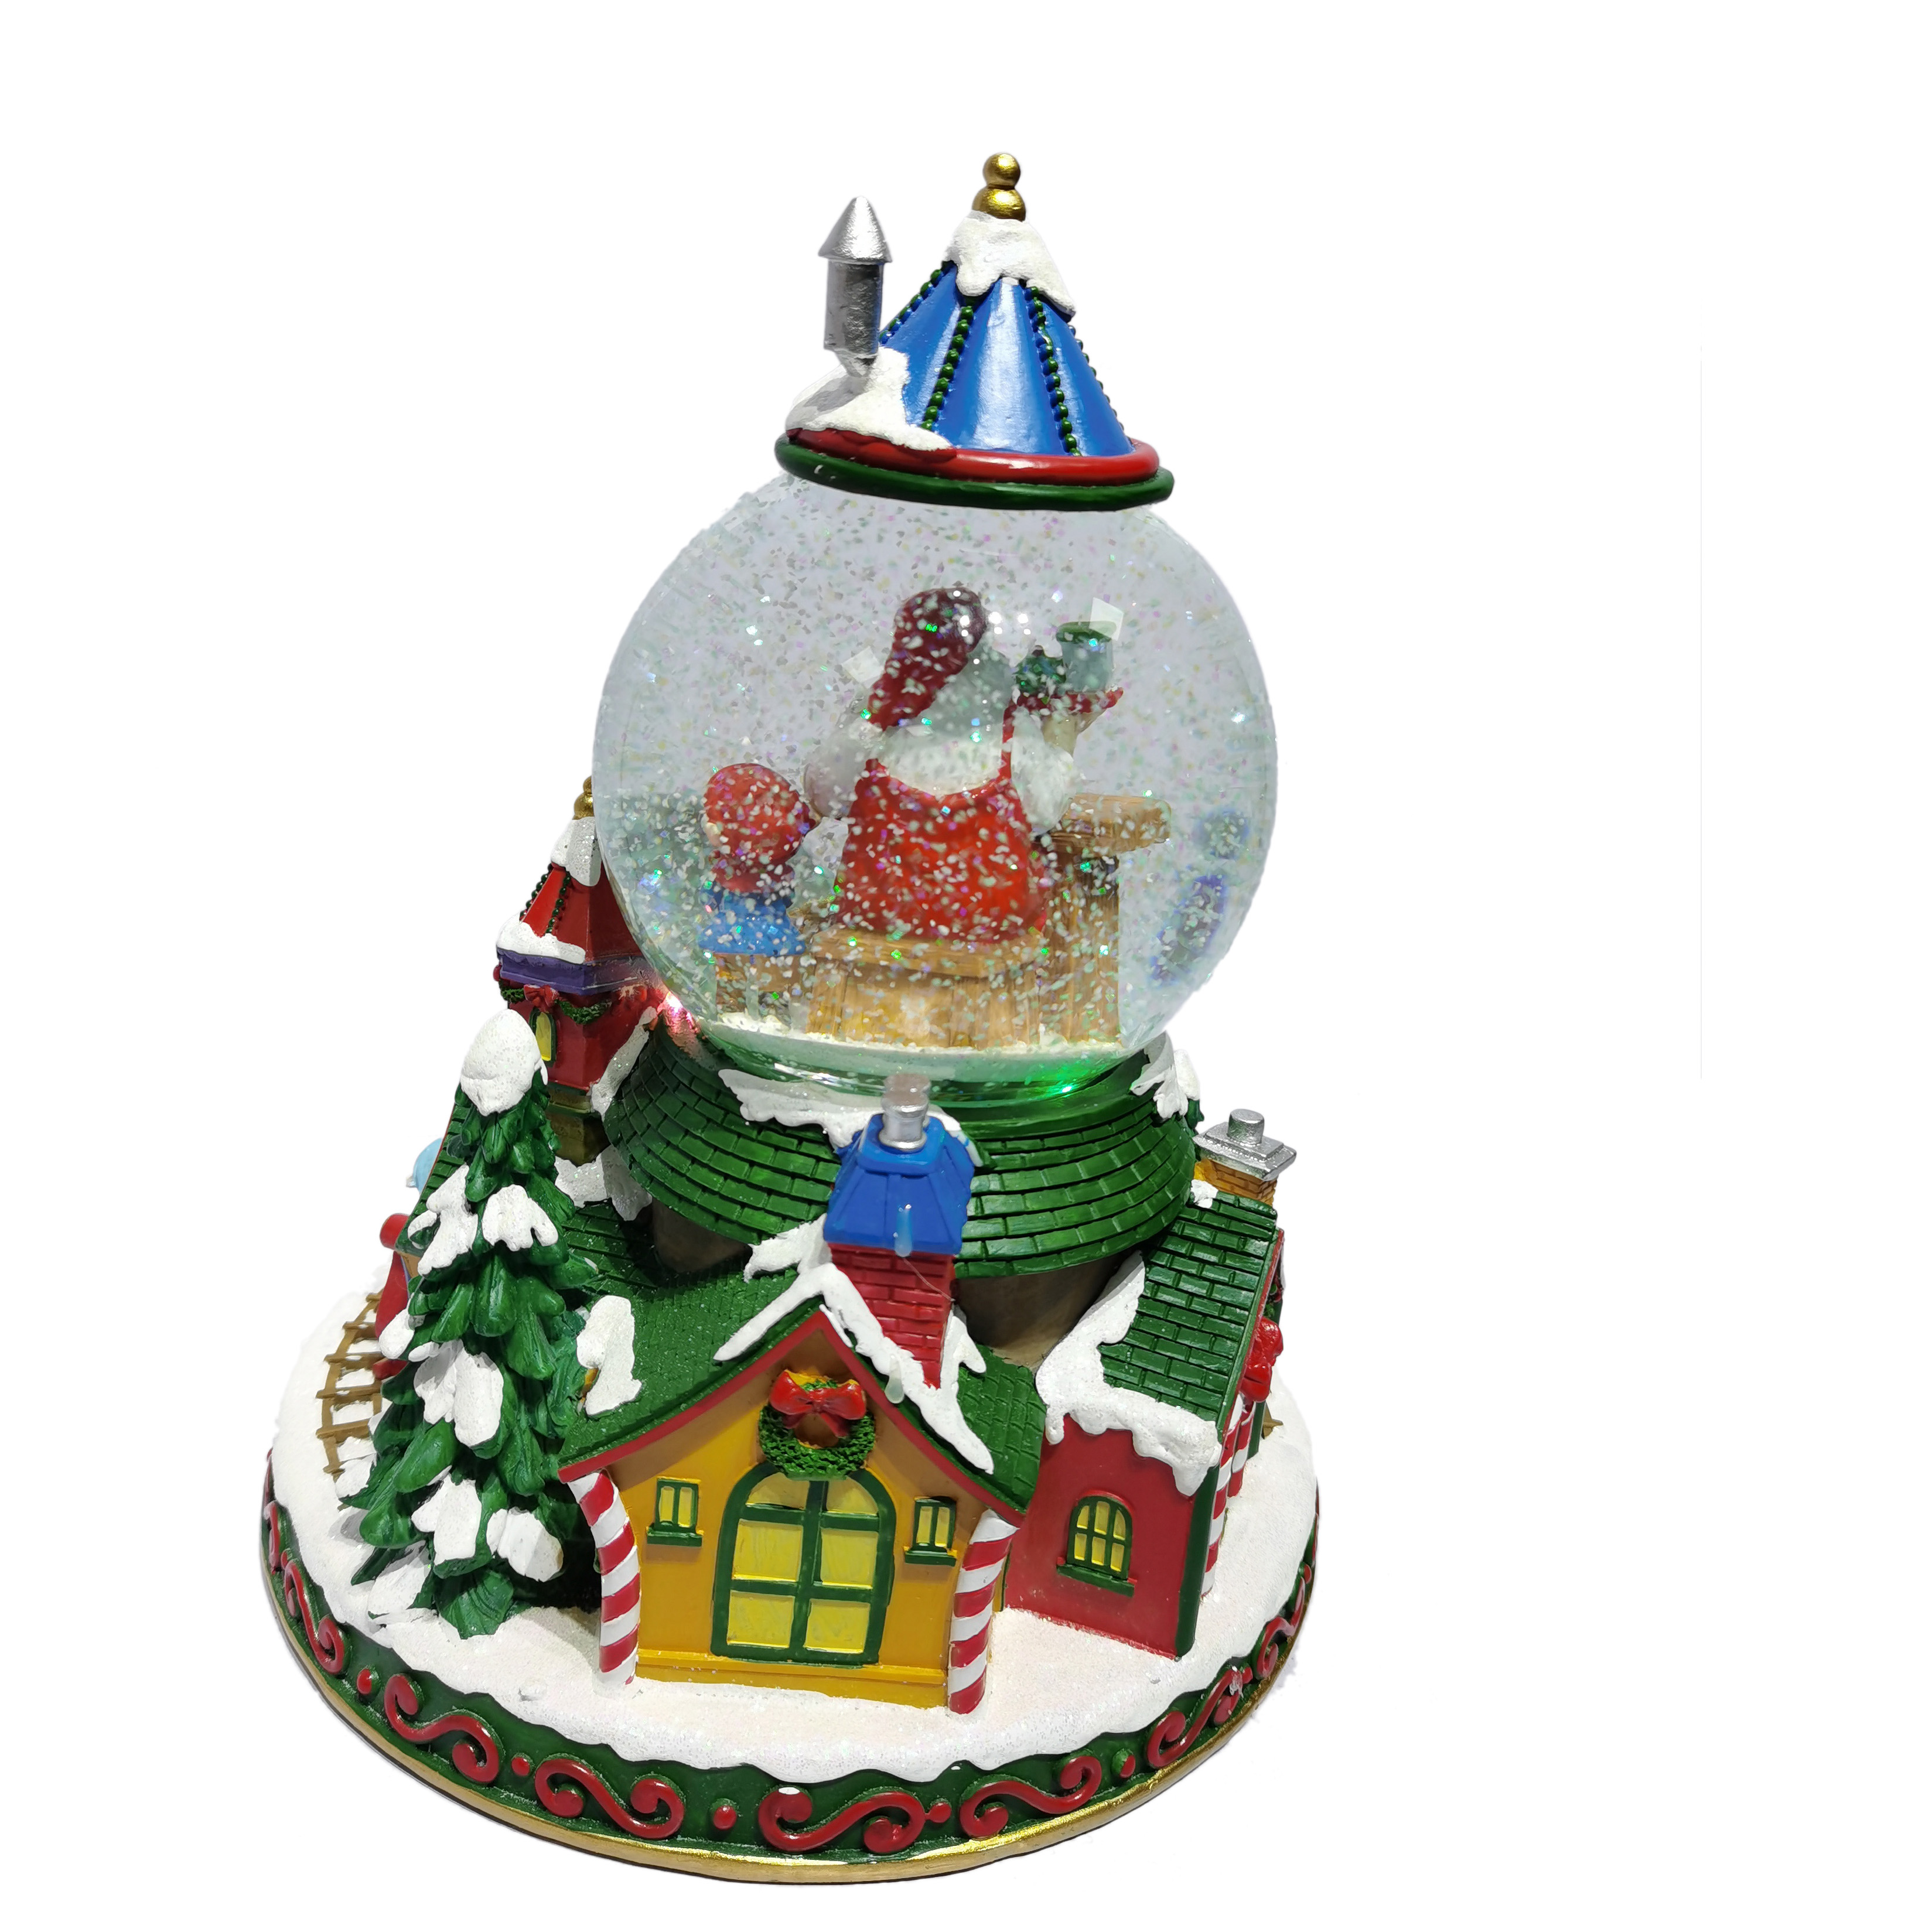 Globo de nieve de Navidad de pueblo iluminado colorido giratorio personalizado de resina con música para decoración de festivales